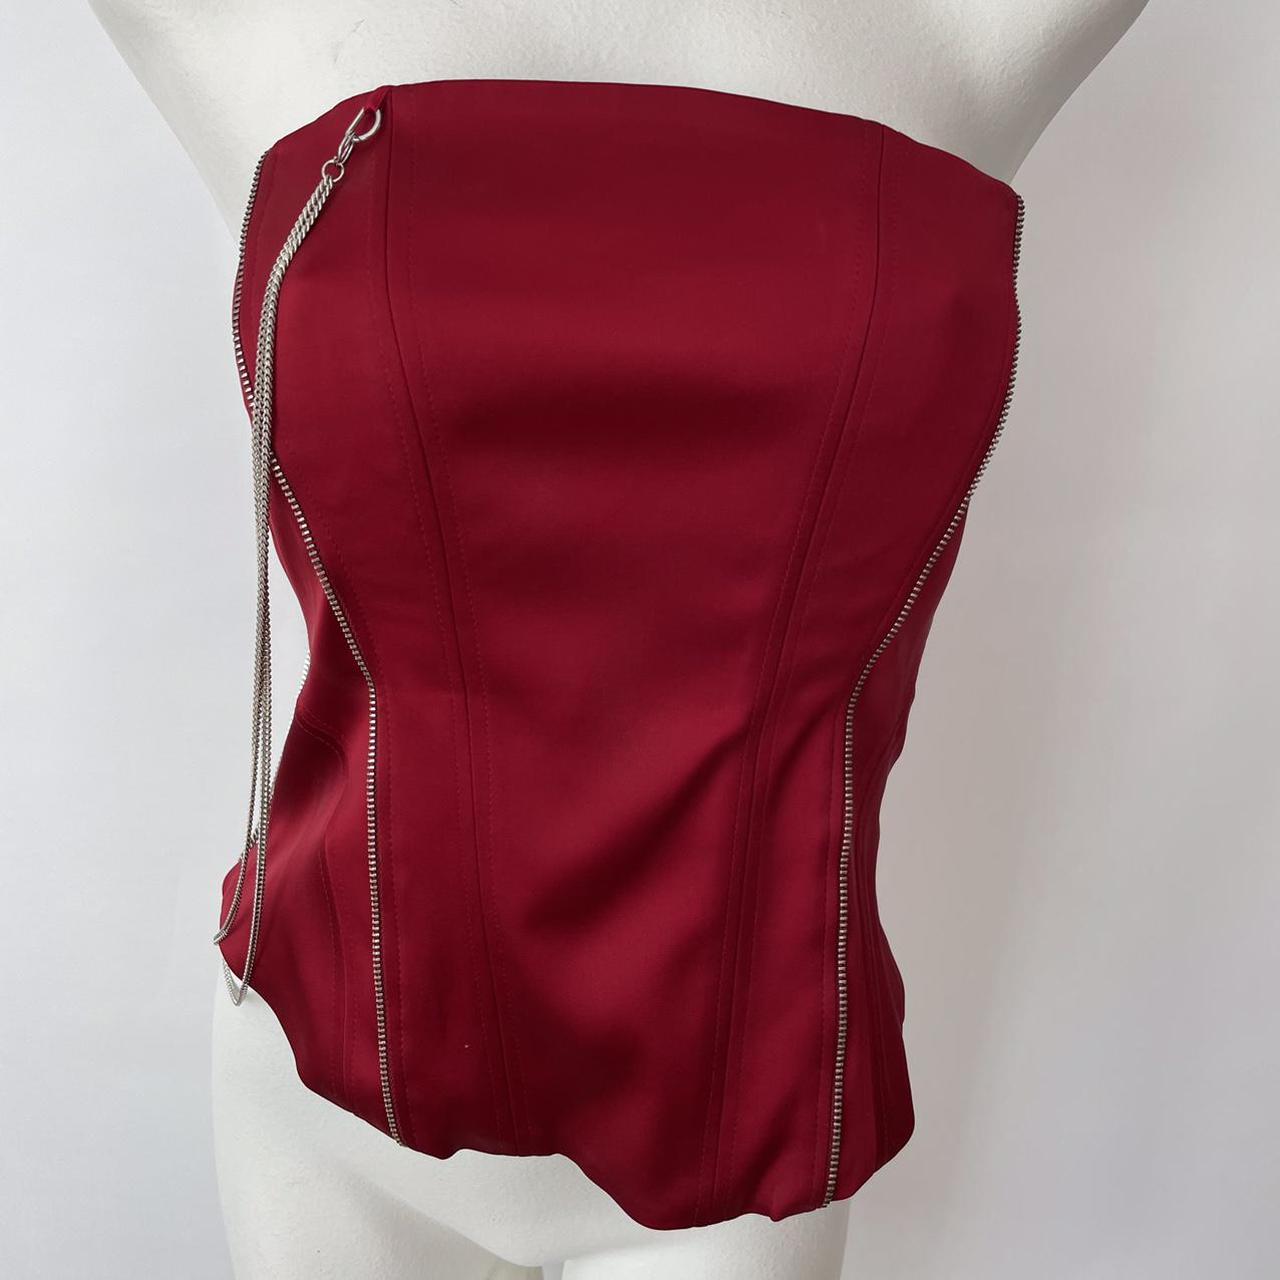 Karen Millen bustier corset top. Bright red satin.... - Depop